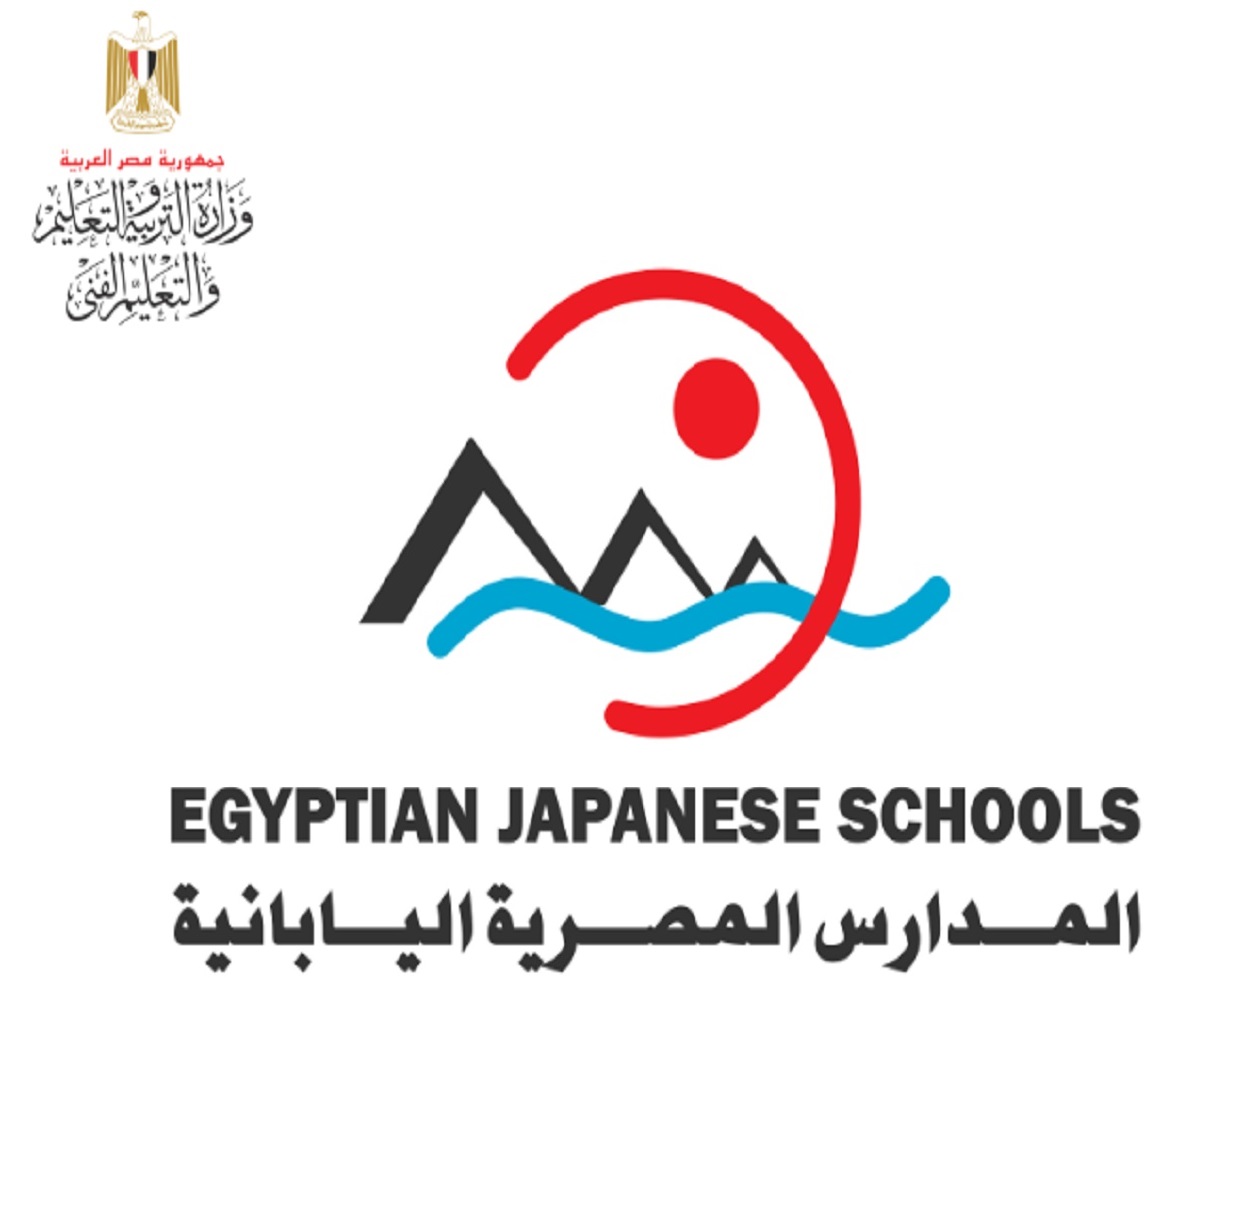 سن التقدم فى المدارس اليابانية المصرية